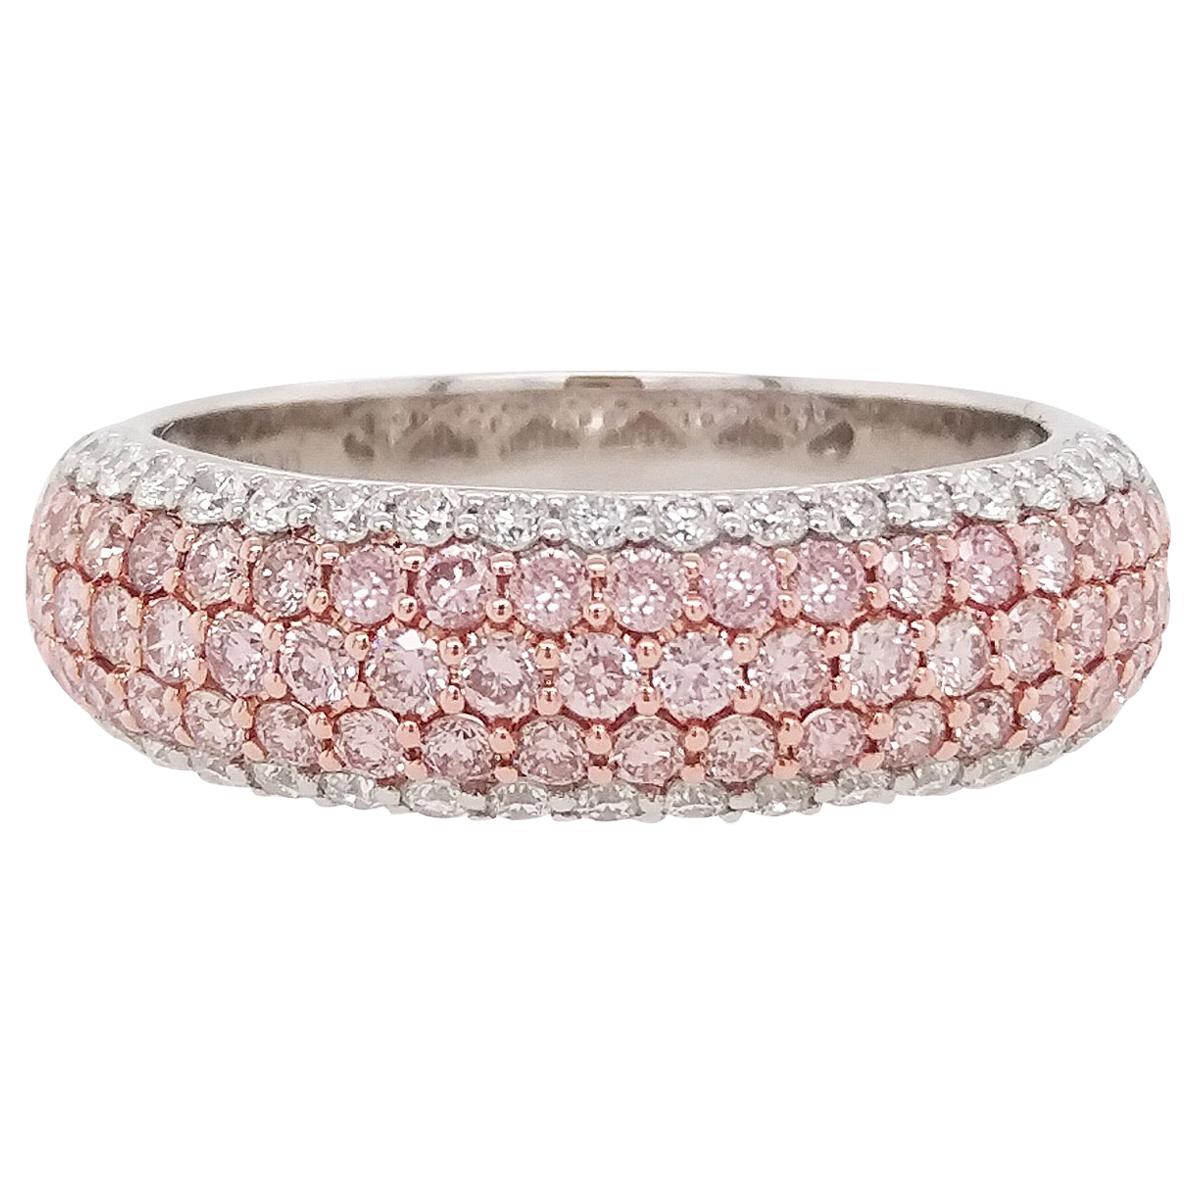 Natural Argyle Pink Diamond Band Ring in Platinum and 18 Karat Pink Gold